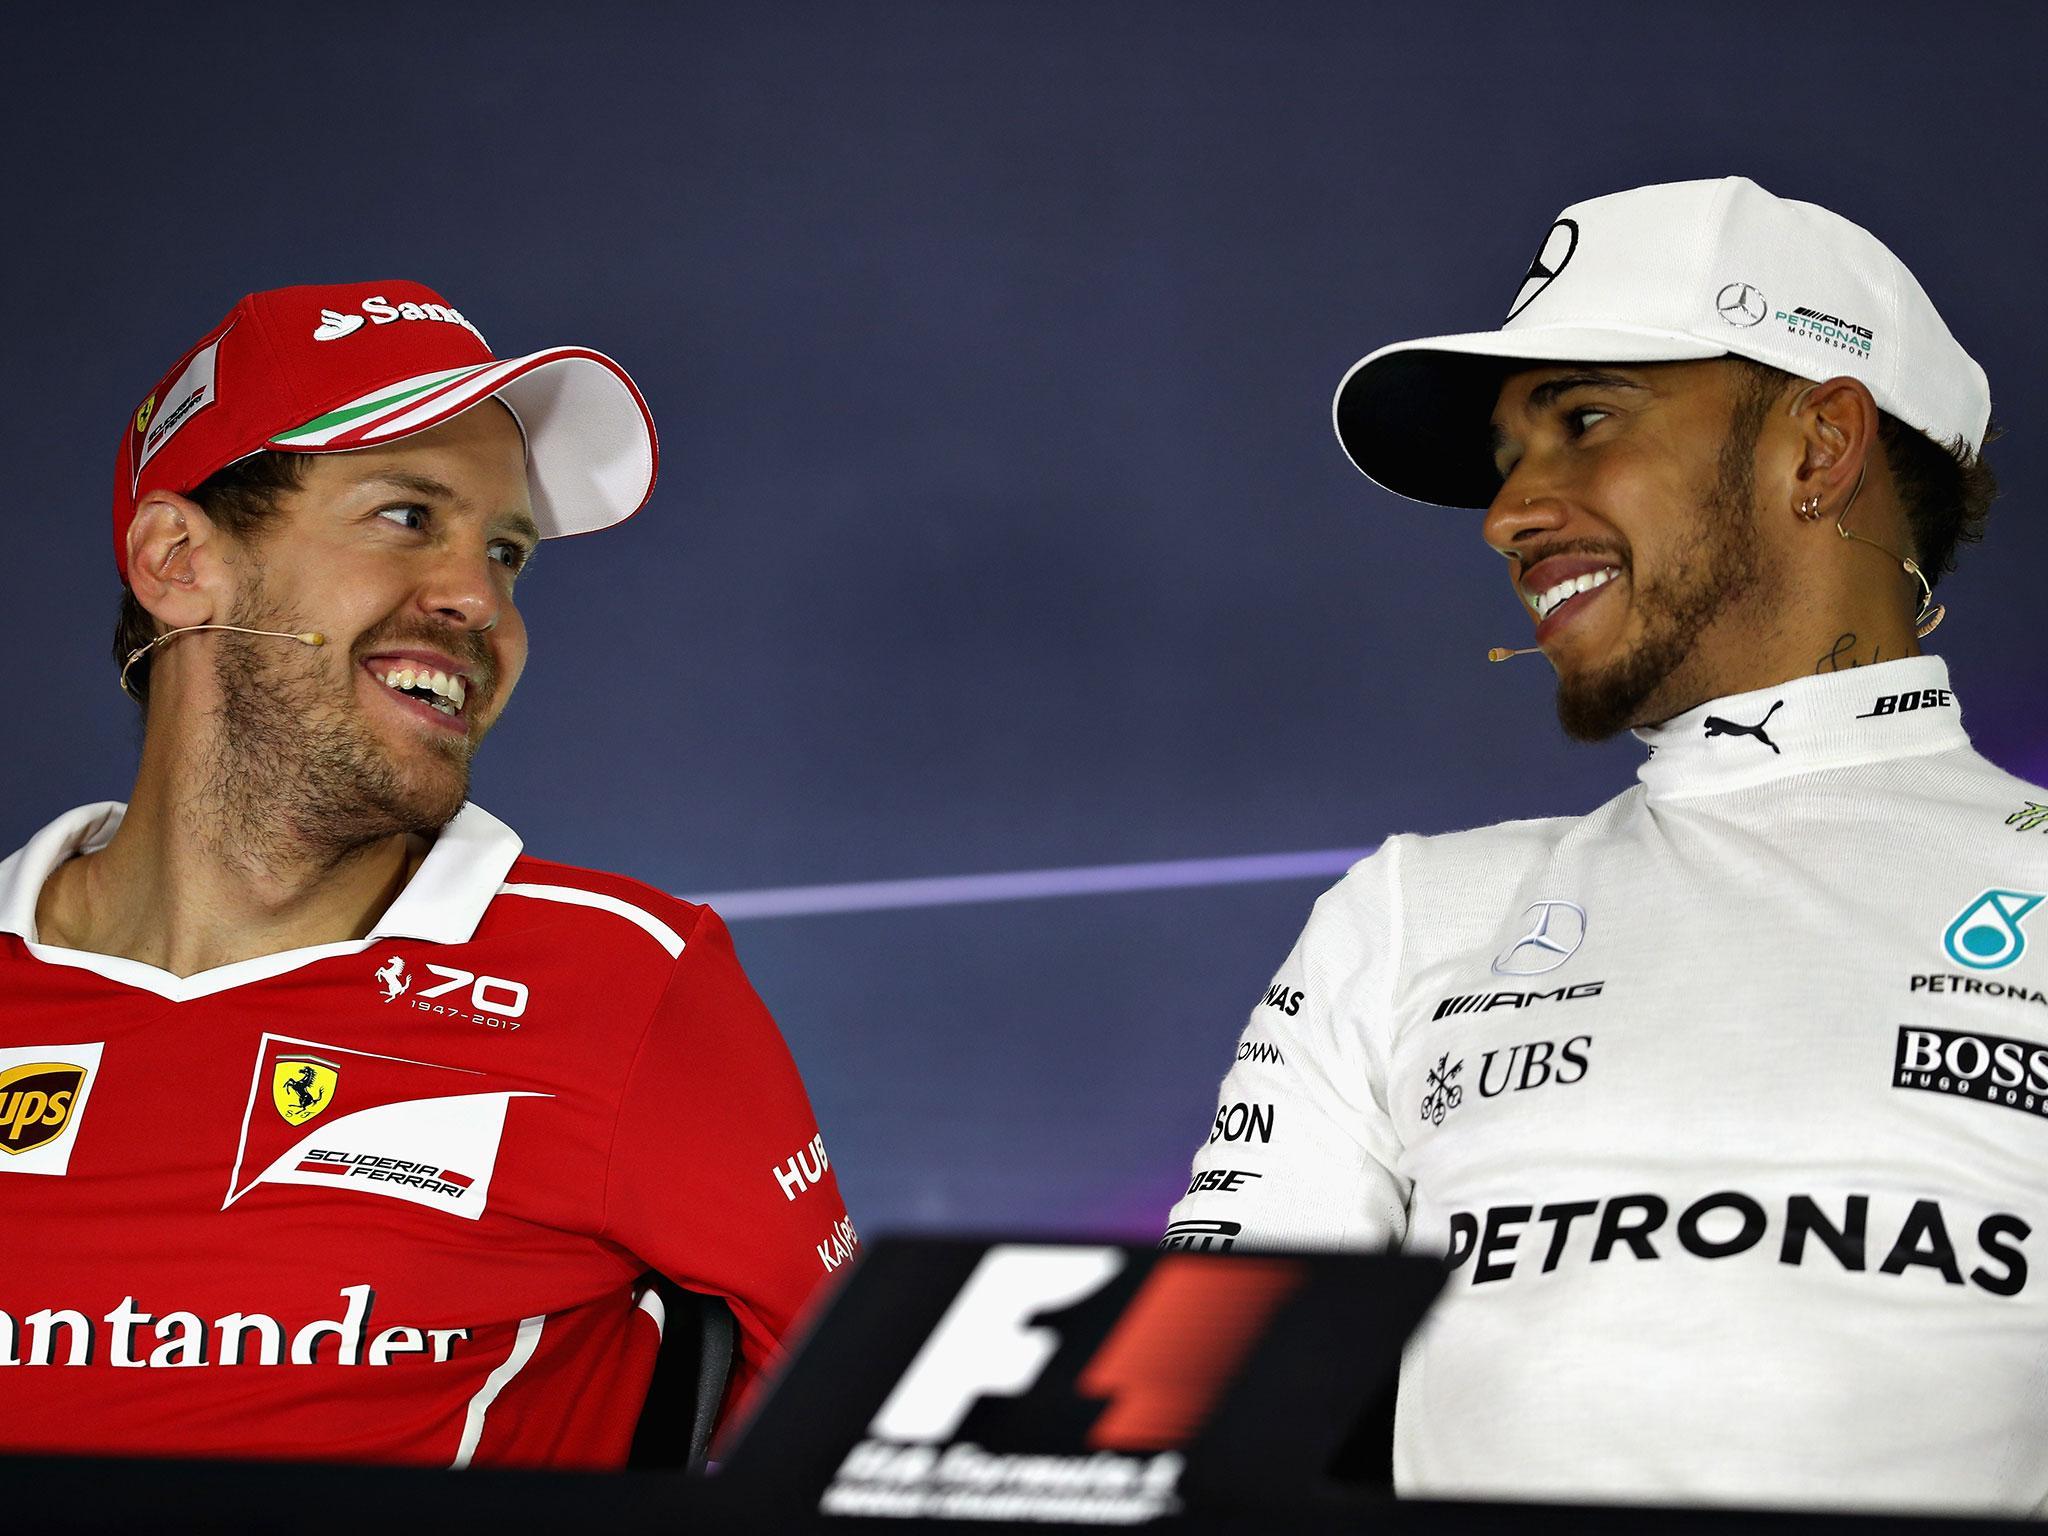 Jenson Button is enjoying the Sebastian Vettel vs Lewis Hamilton title battle